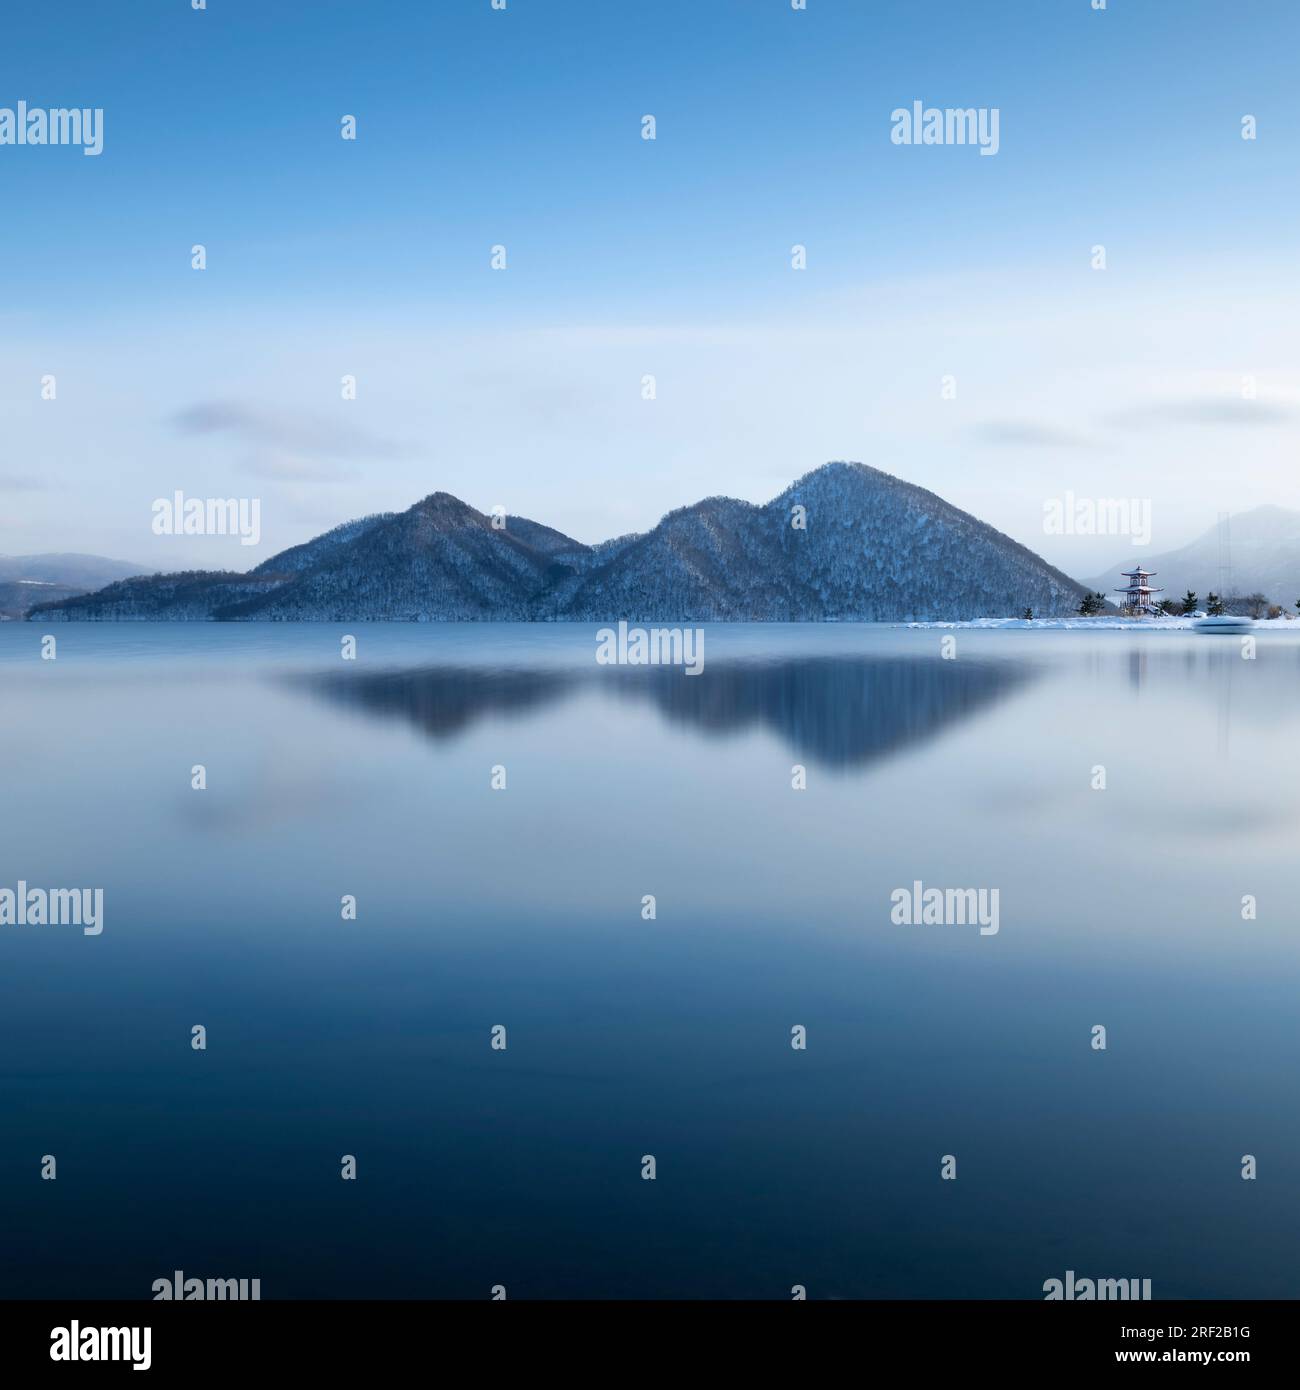 Foto a lunga esposizione dell'inverno al lago Toya, Hokkaido, Giappone Foto Stock